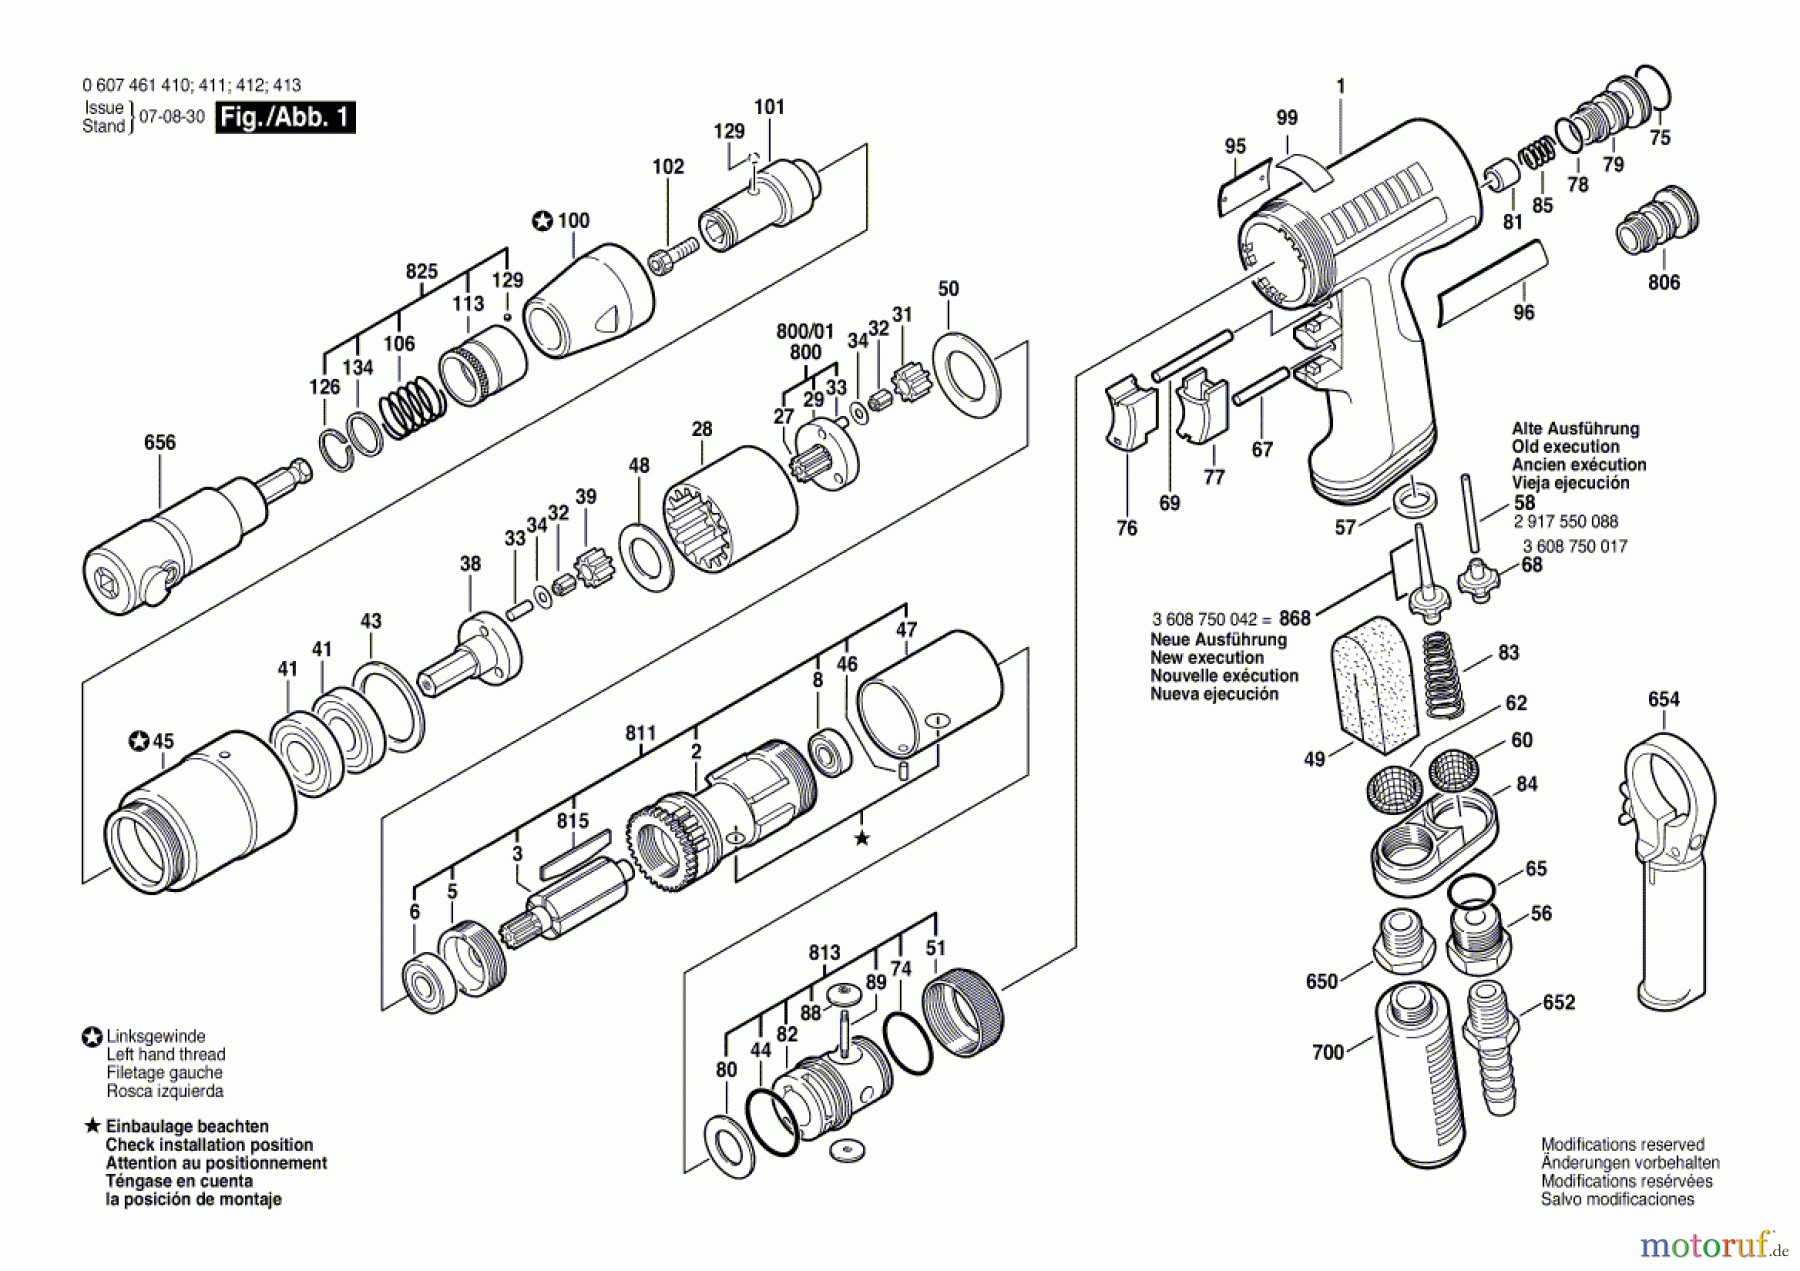  Bosch Werkzeug Gewindeschneider 400 WATT-SERIE Seite 1